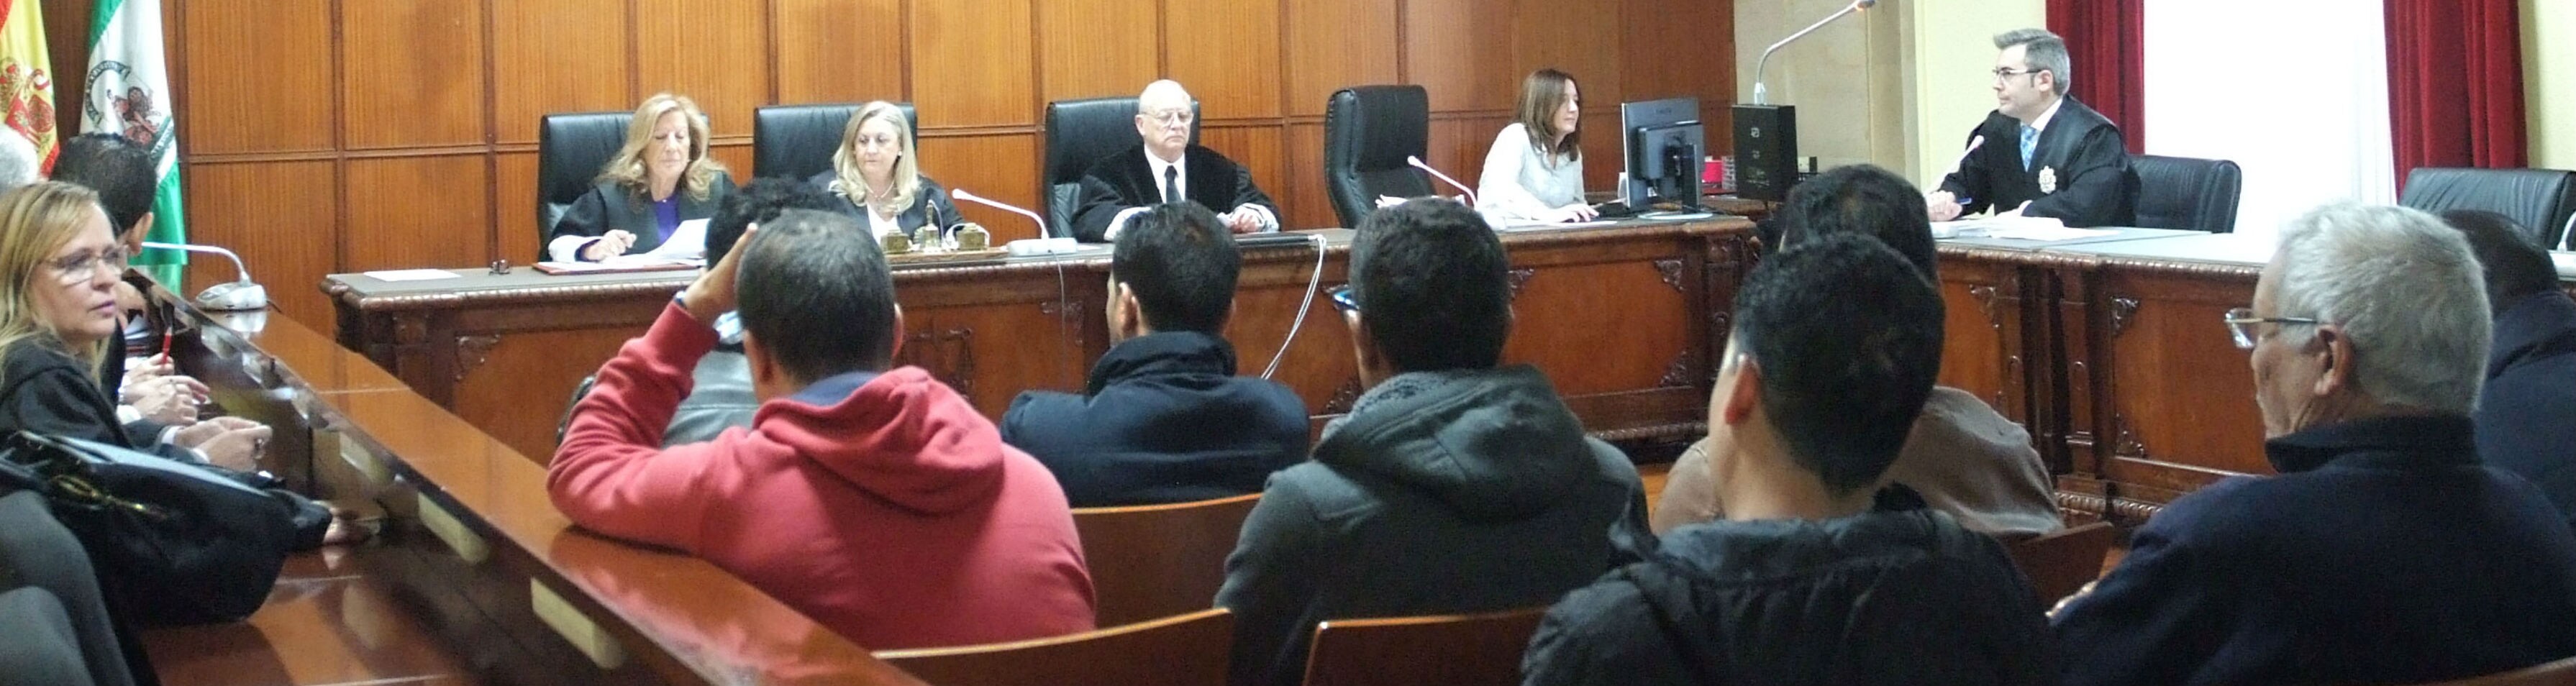 El juicio se ha celebrado en la Audiencia de Jaén